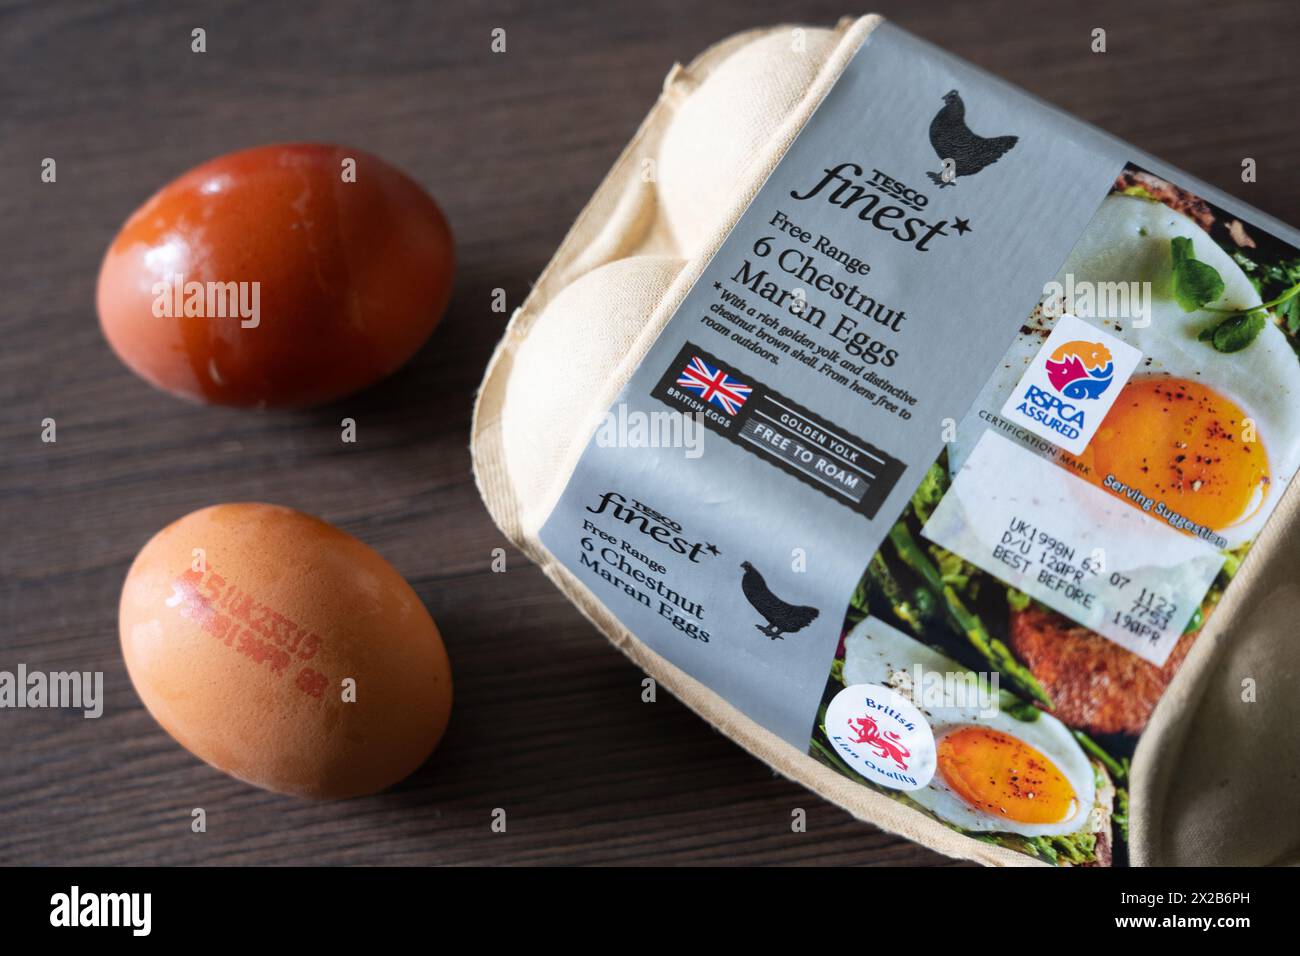 Le migliori uova marane di castagne di marca di Tesco e un cartone di uova, Inghilterra. Concetto: Uova da supermercato, uova di pollo, qualità British Lion Foto Stock